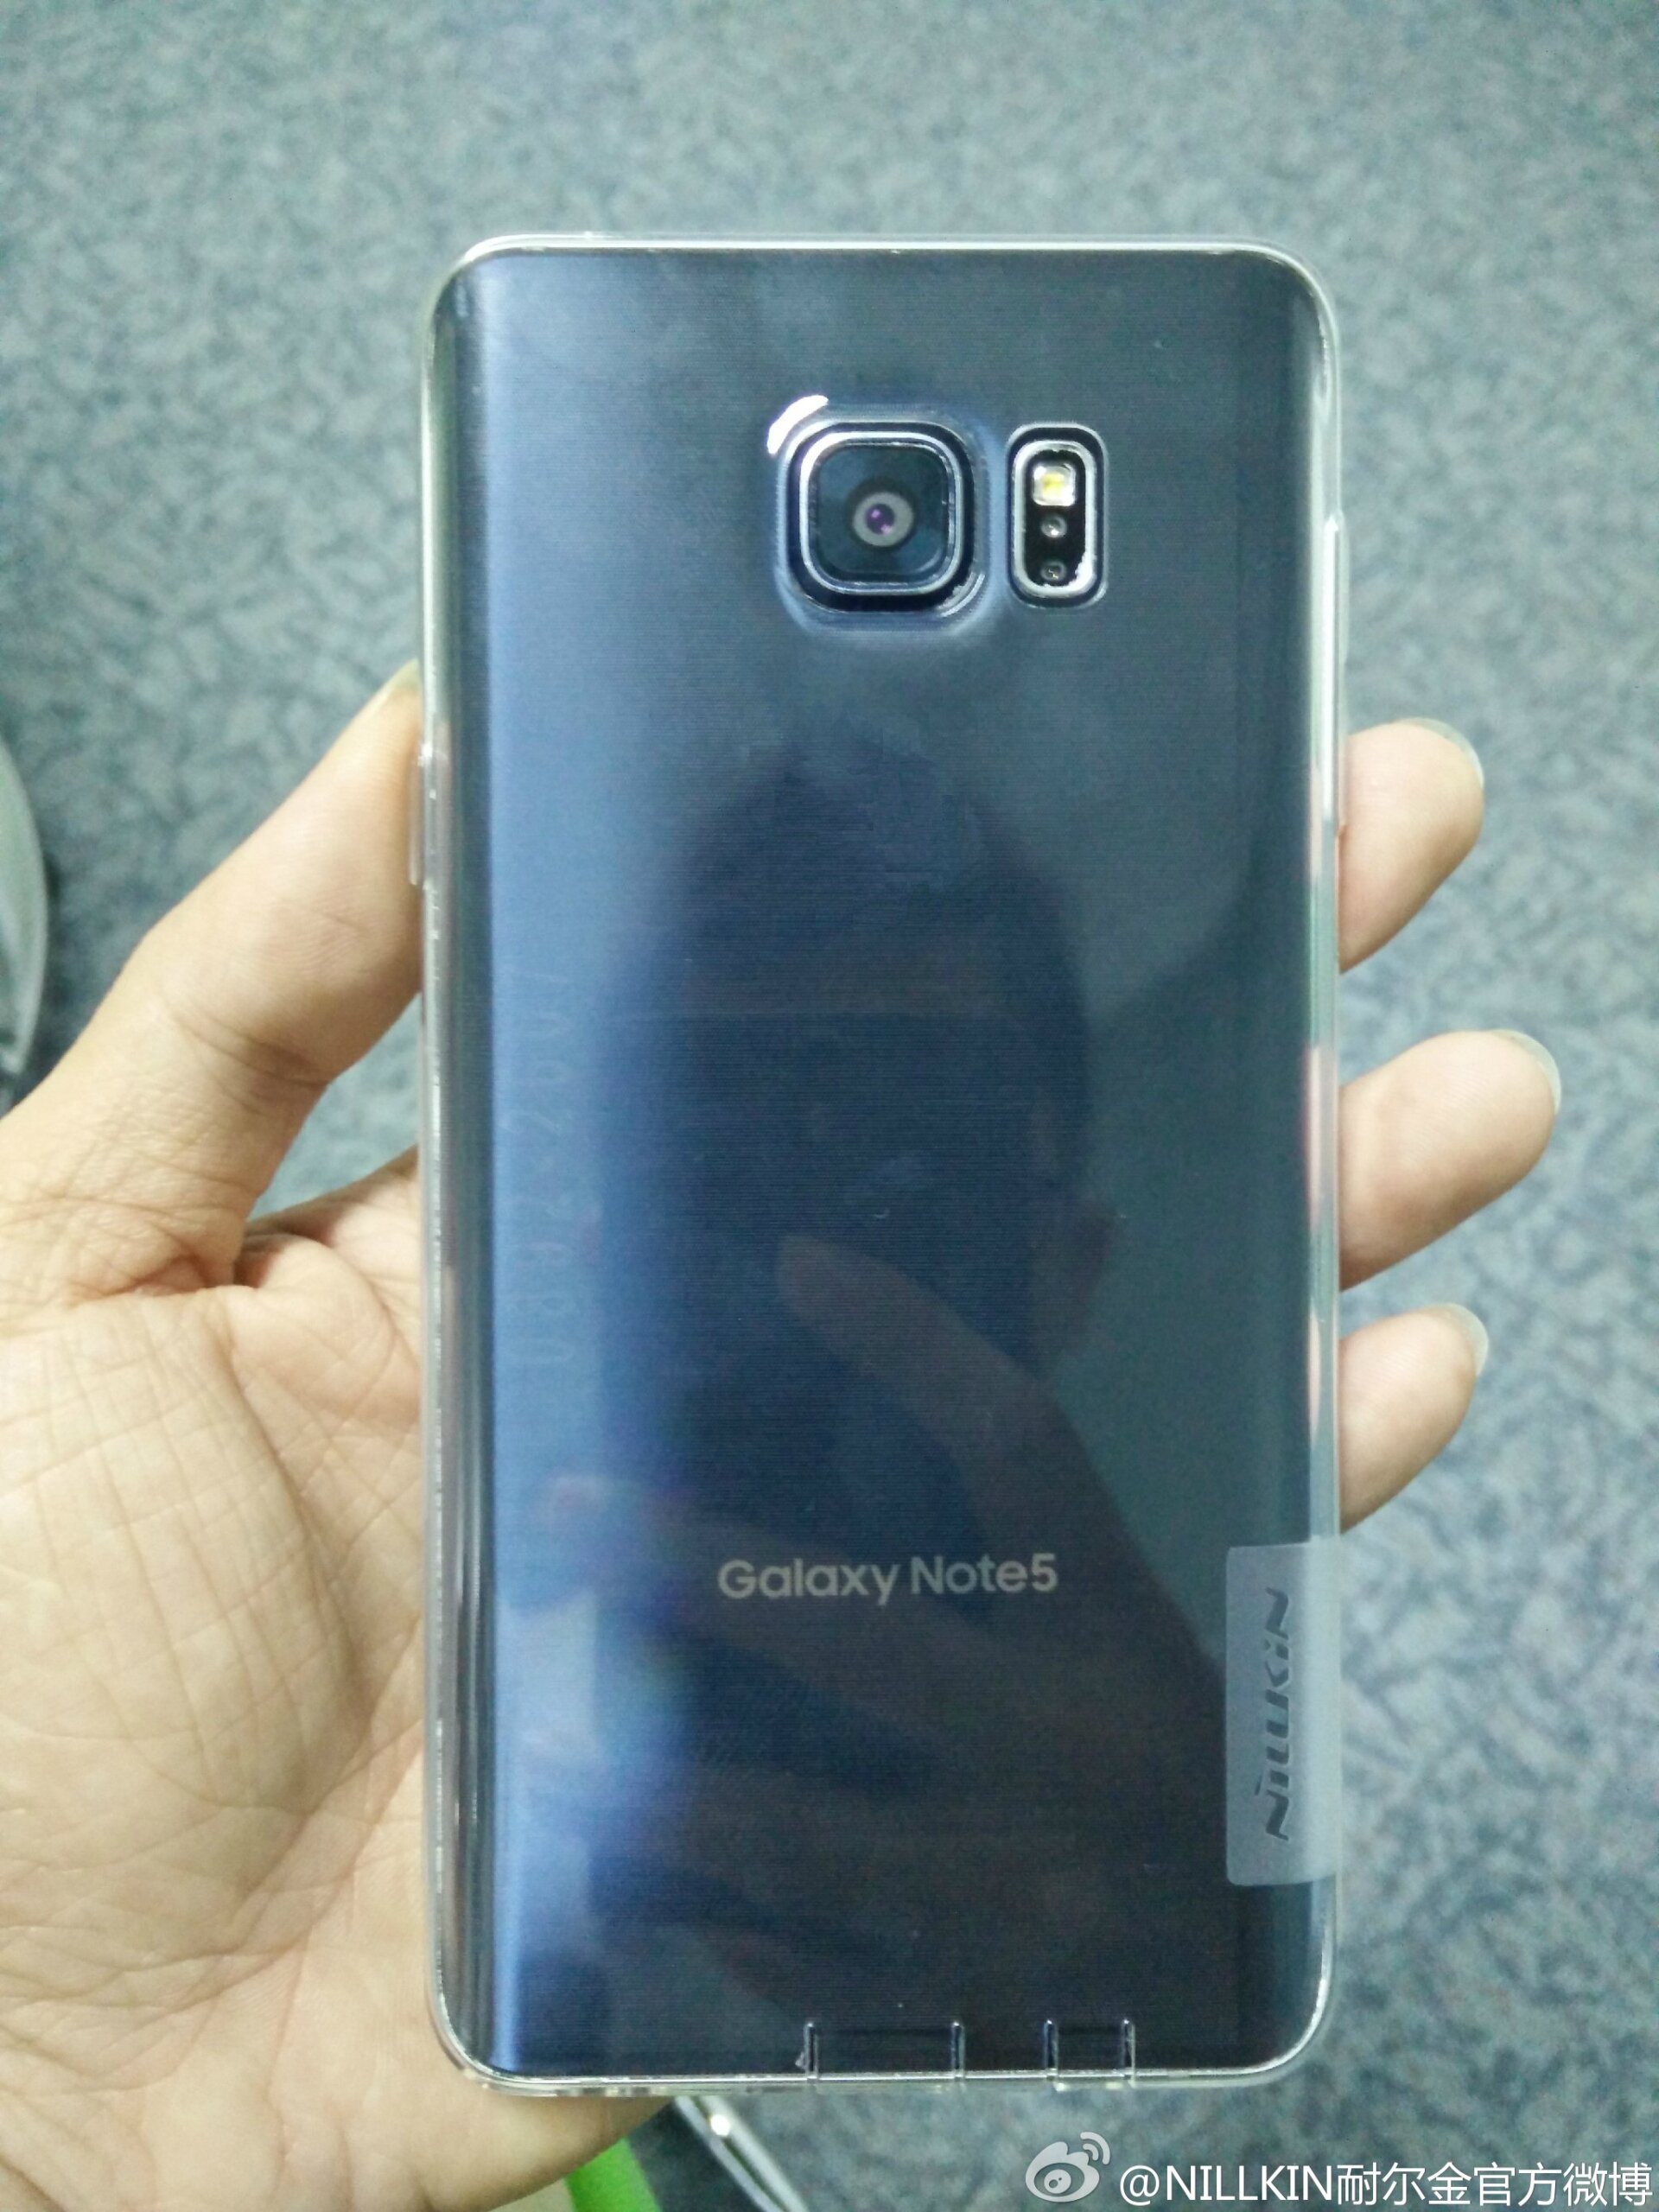 ชัดเจนแล้ว Samsung เผยภาพใหม่ ใบ้ Note 5 มาแน่ เจอกัน Galaxy Unpacked 13 สิงหาคมนี้